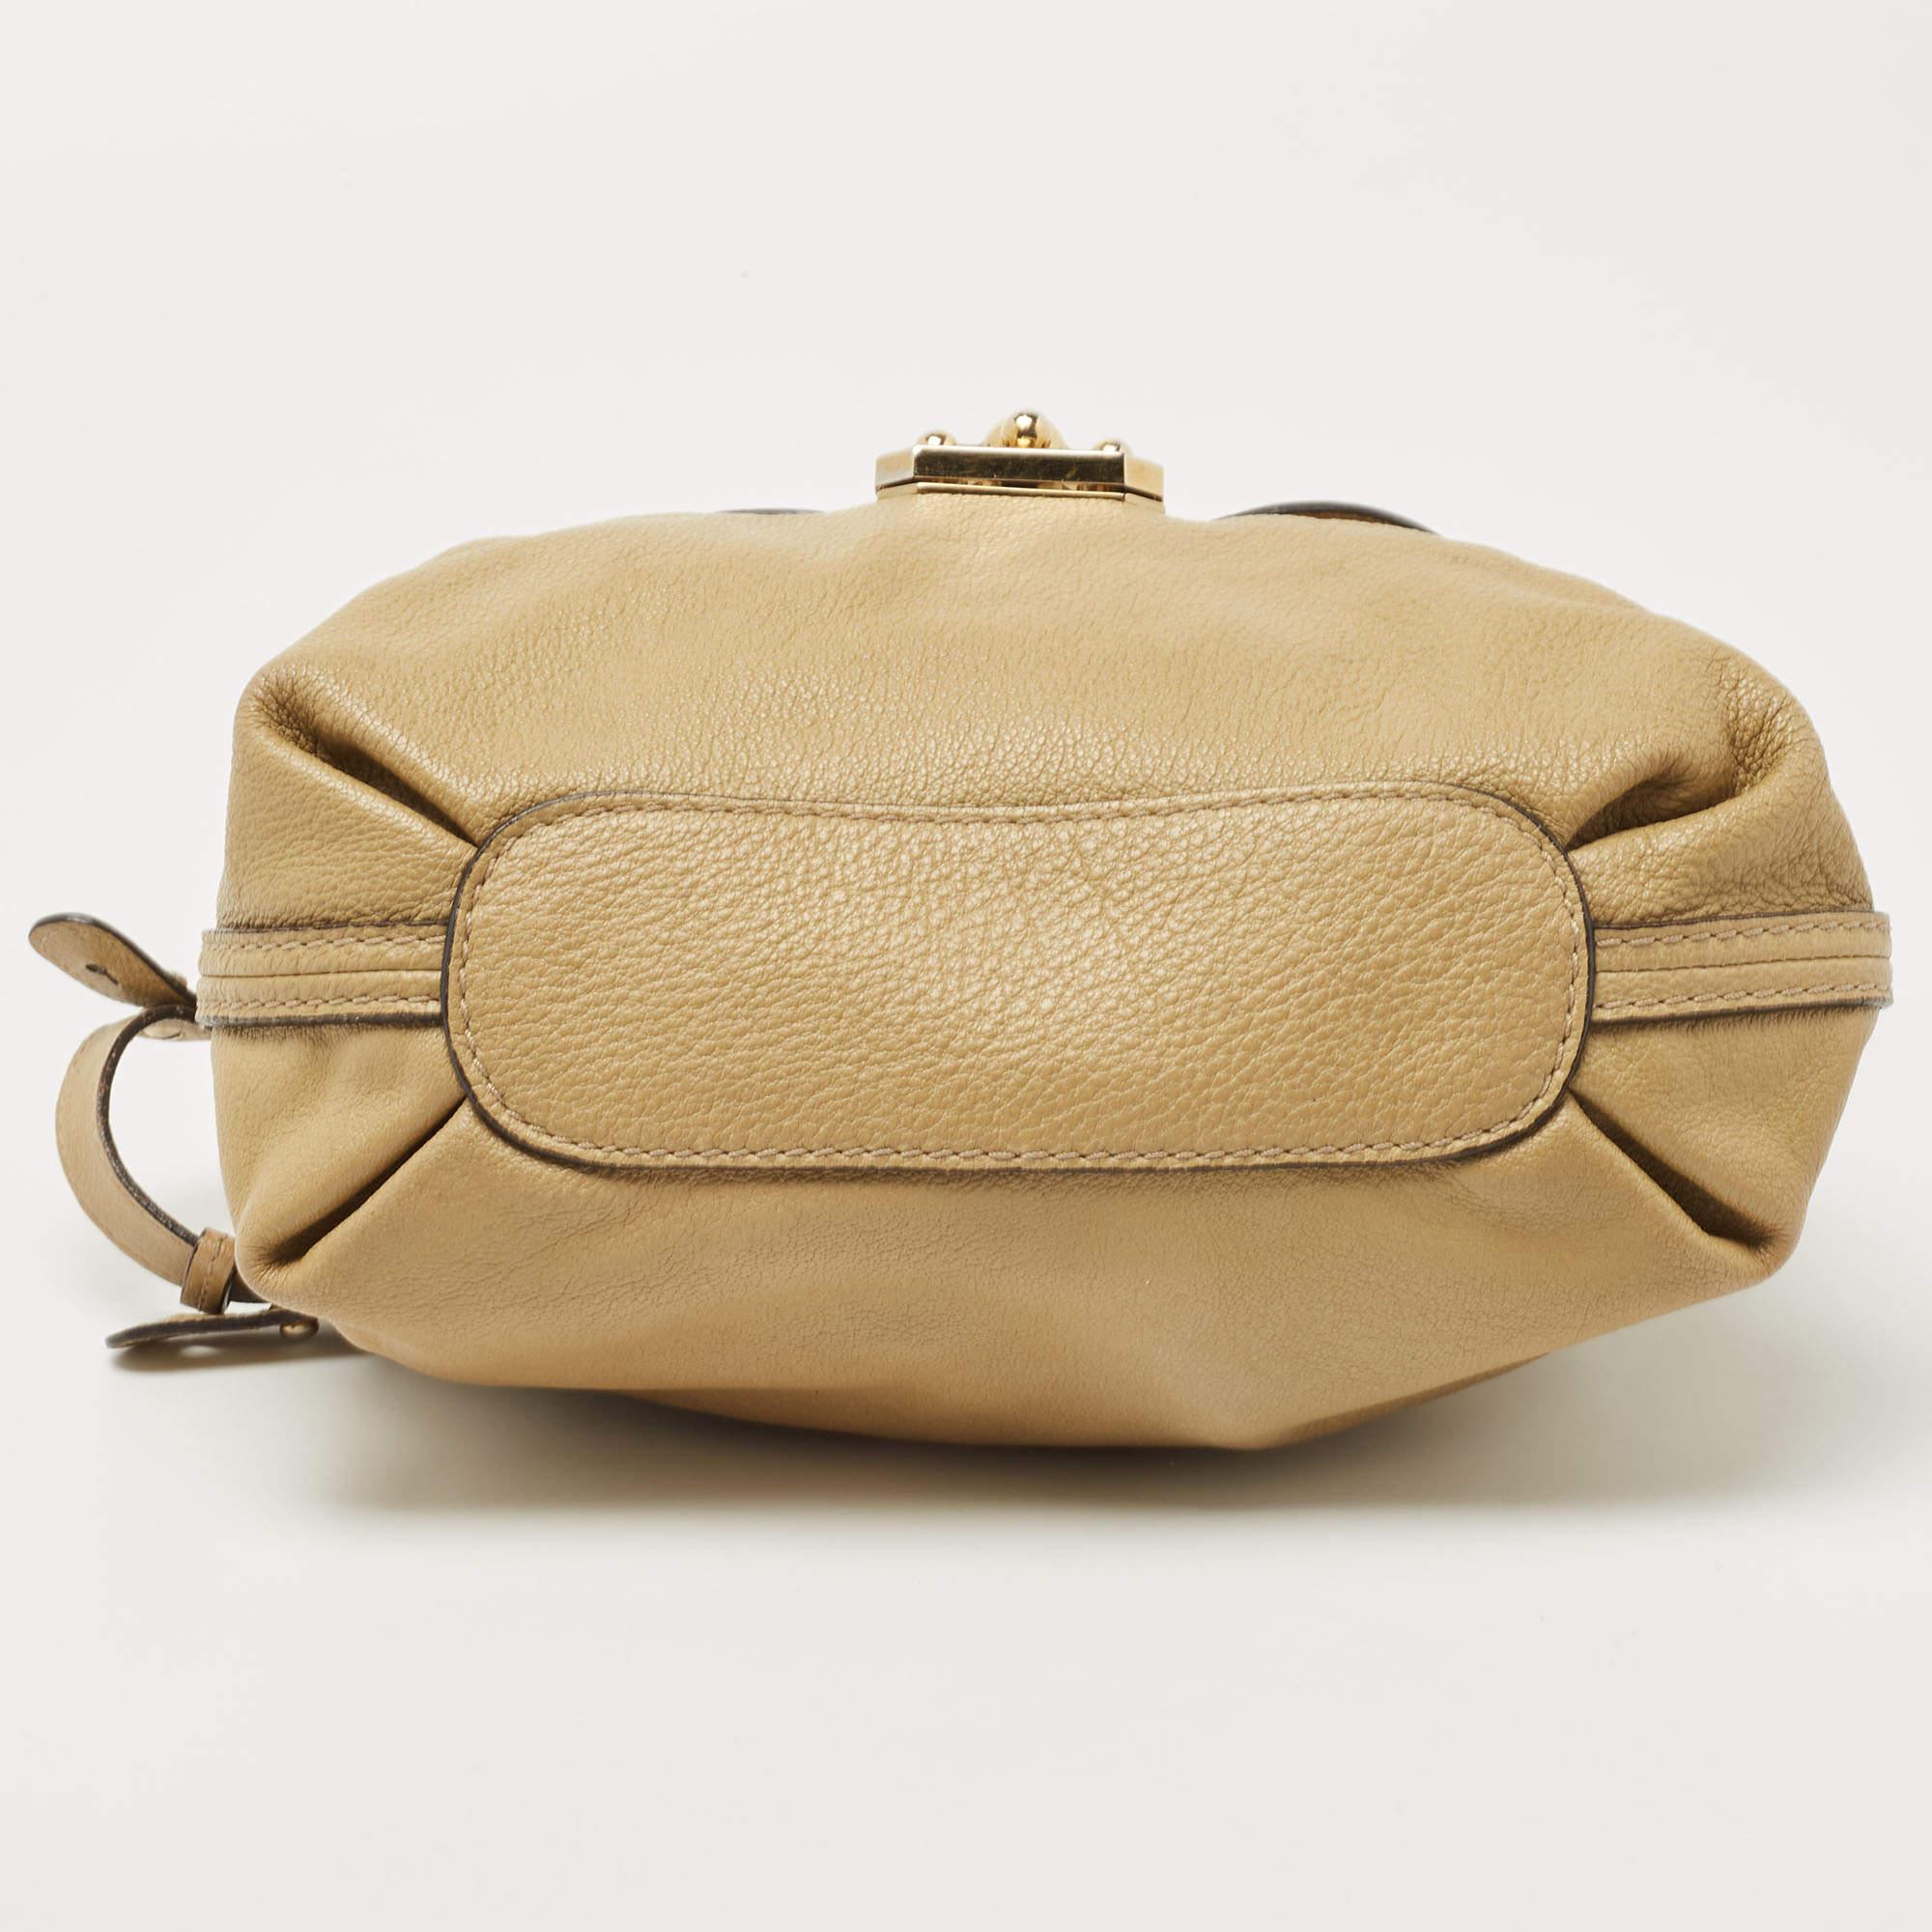 Chloe Olive Green Leather Elsie Top Handle Bag 1